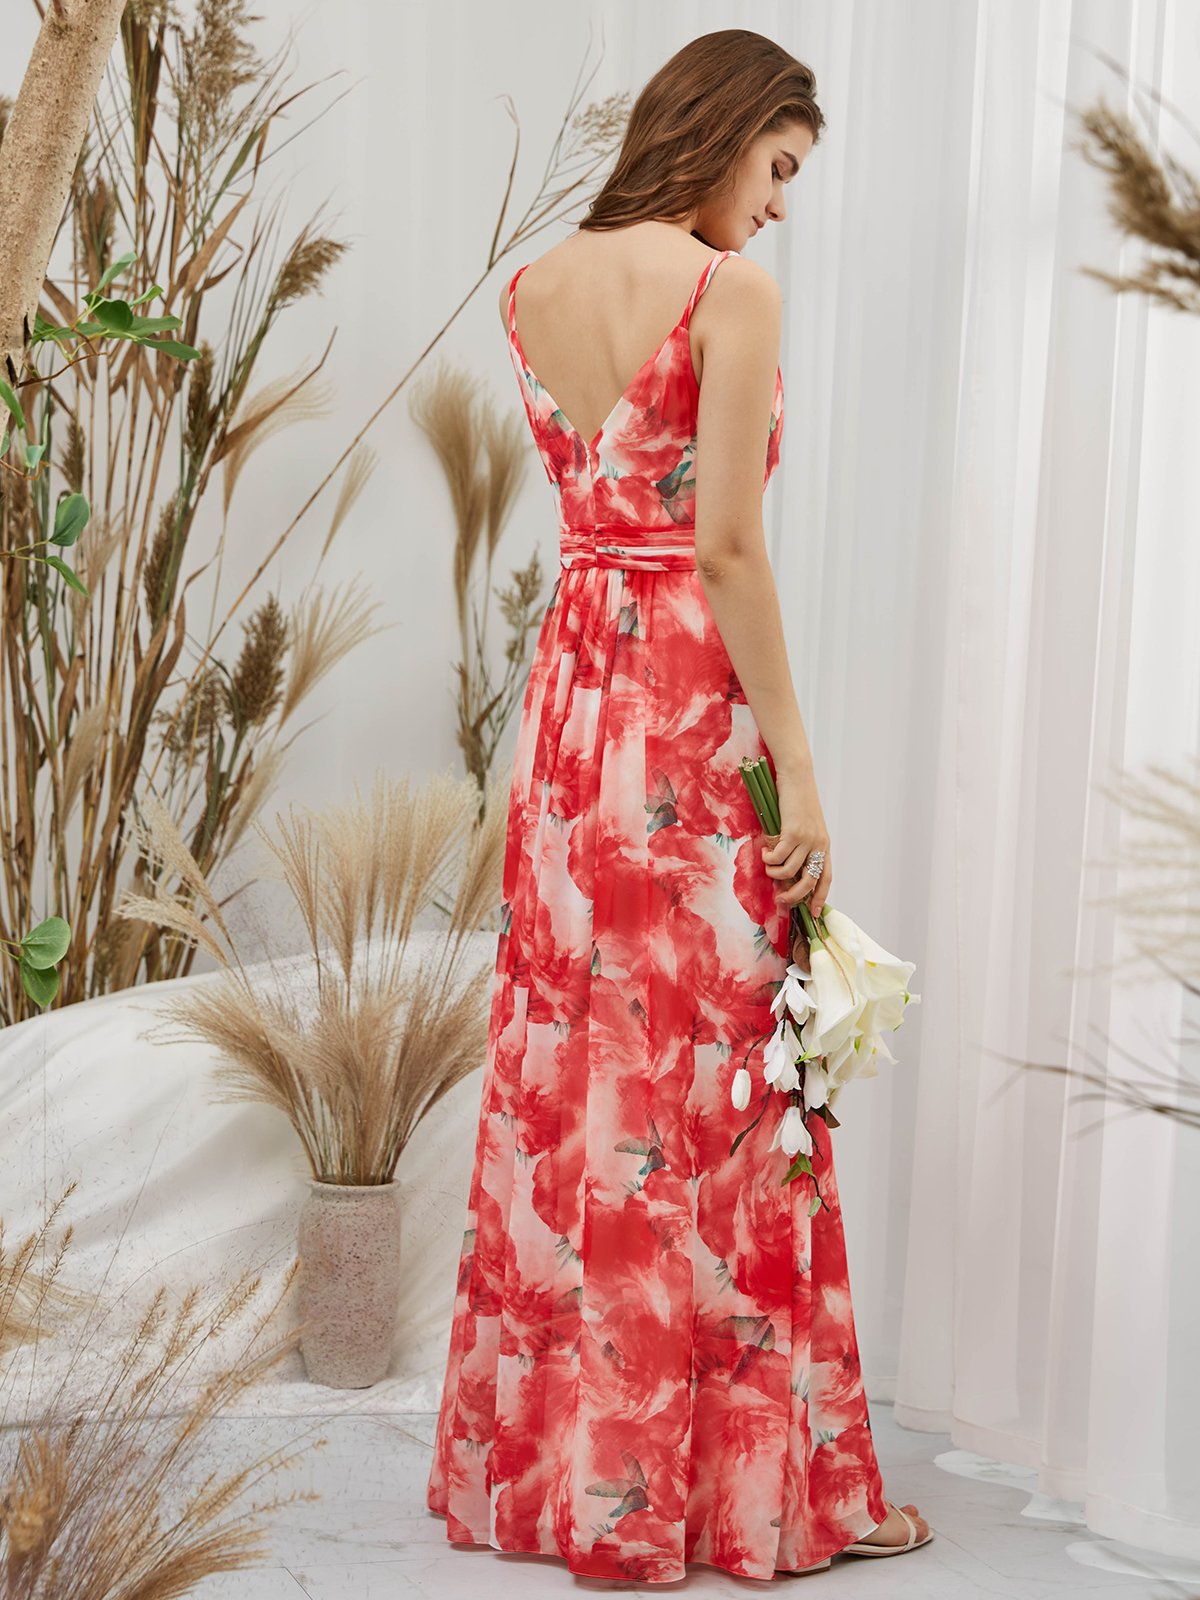 MissJophiel One Shoulder Chiffon Print Floral Red Floor Length Formal Evening Gown